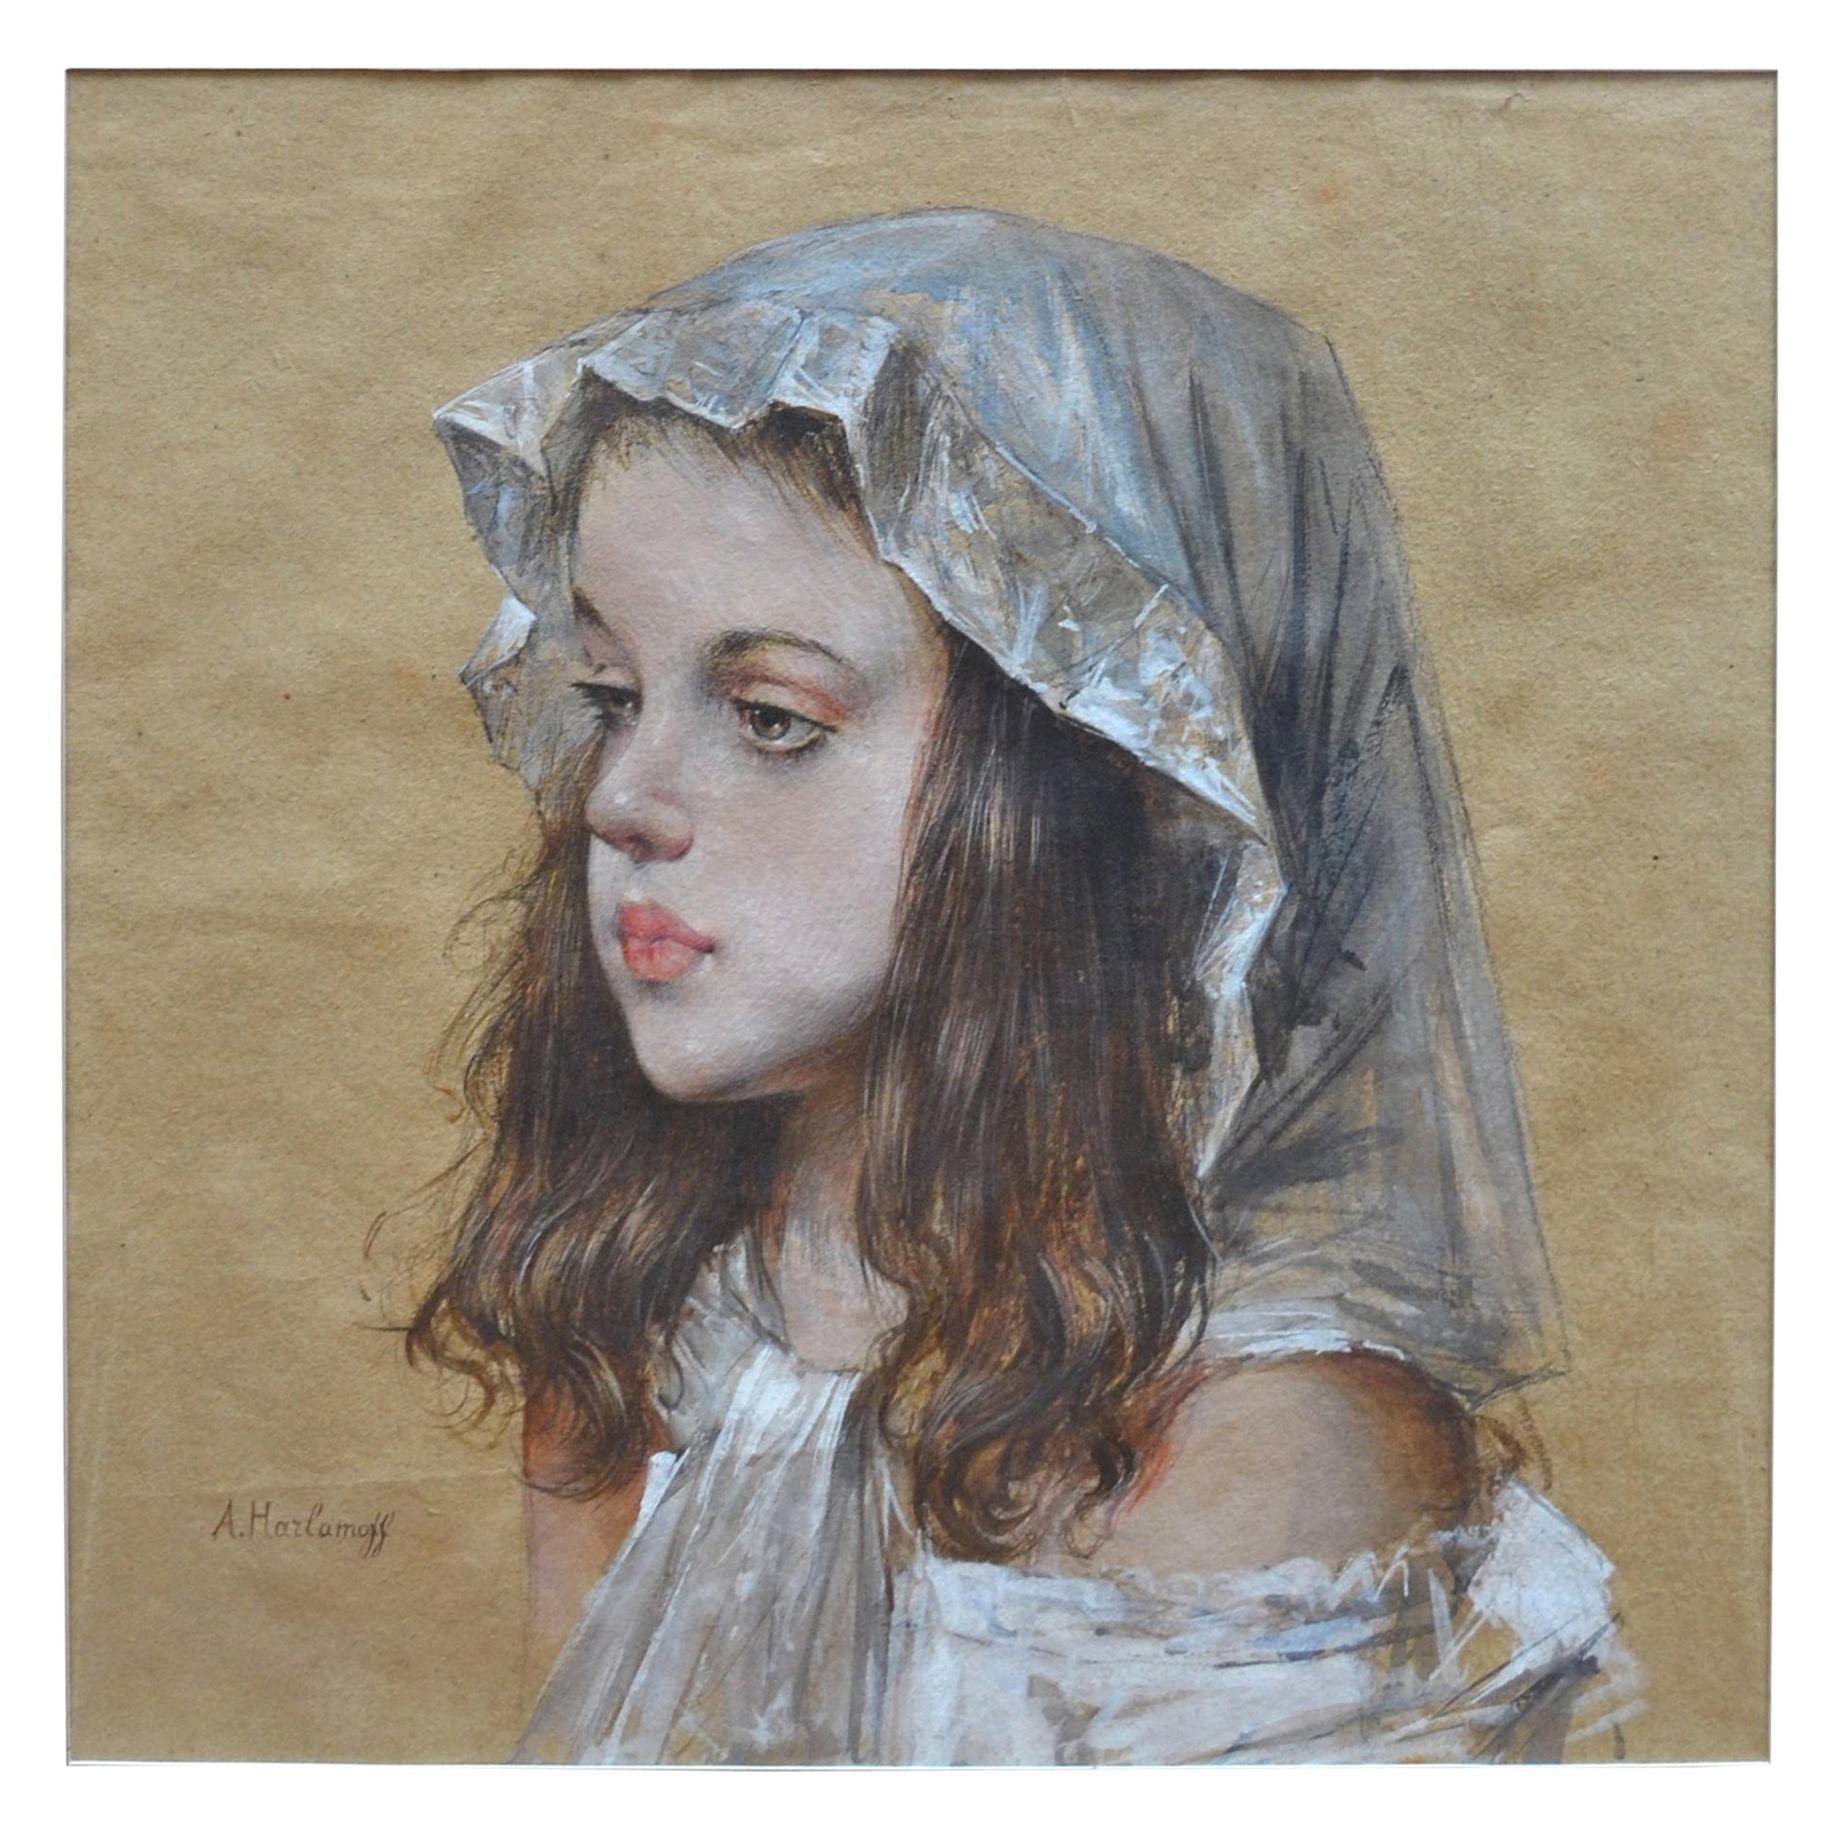 Porträt eines jungen russischen oder französischen Mädchens, ausgeführt in Kohle und Gouache auf Papier. Harlamoff war vor allem für seine meisterhaften Porträts junger Mädchen bekannt, von denen dieses ein schönes Beispiel ist, das er wegen ihrer